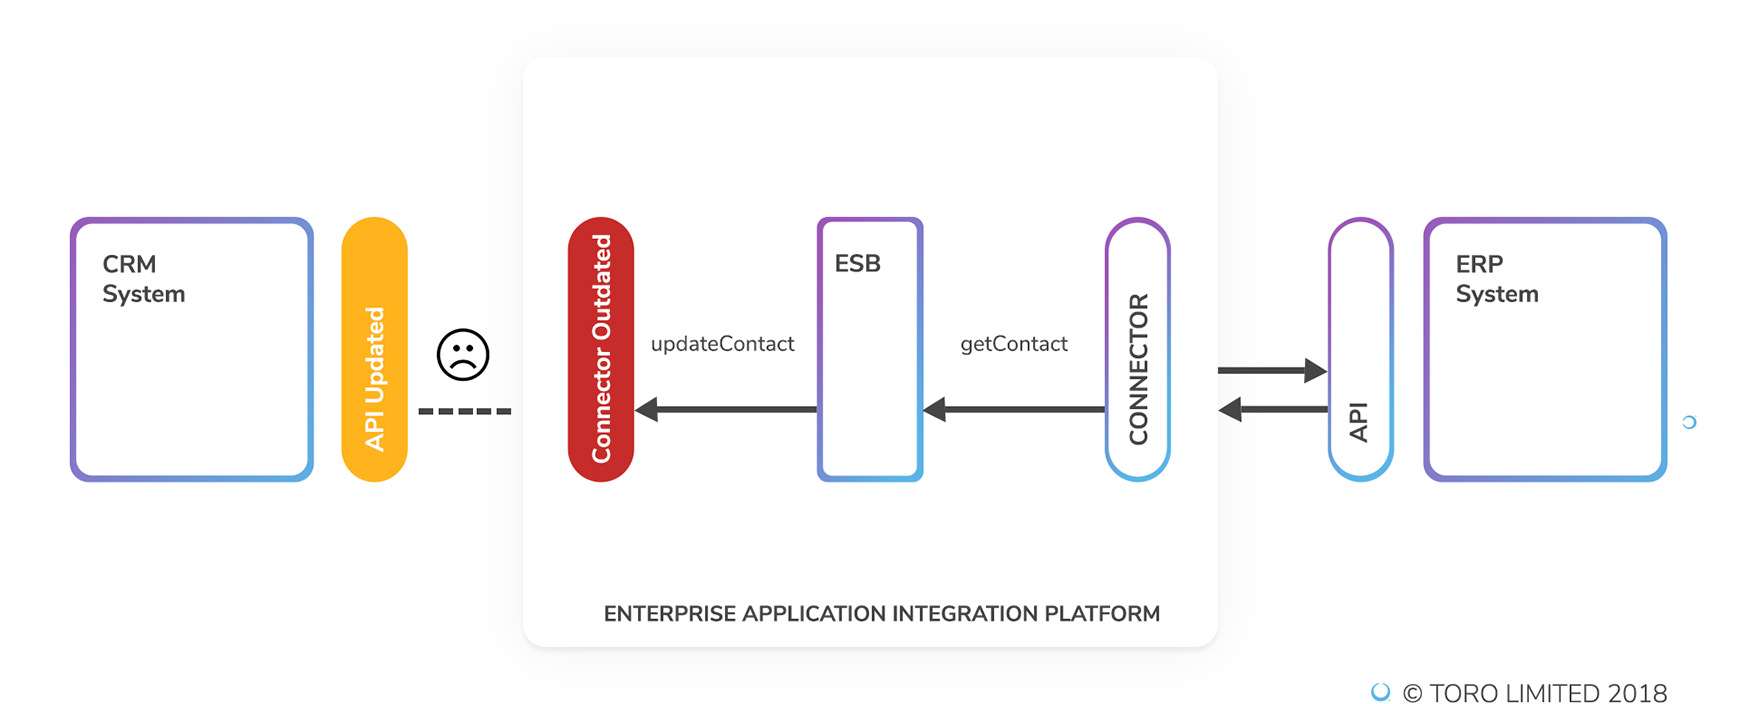 Enterprise Application Integration Platform